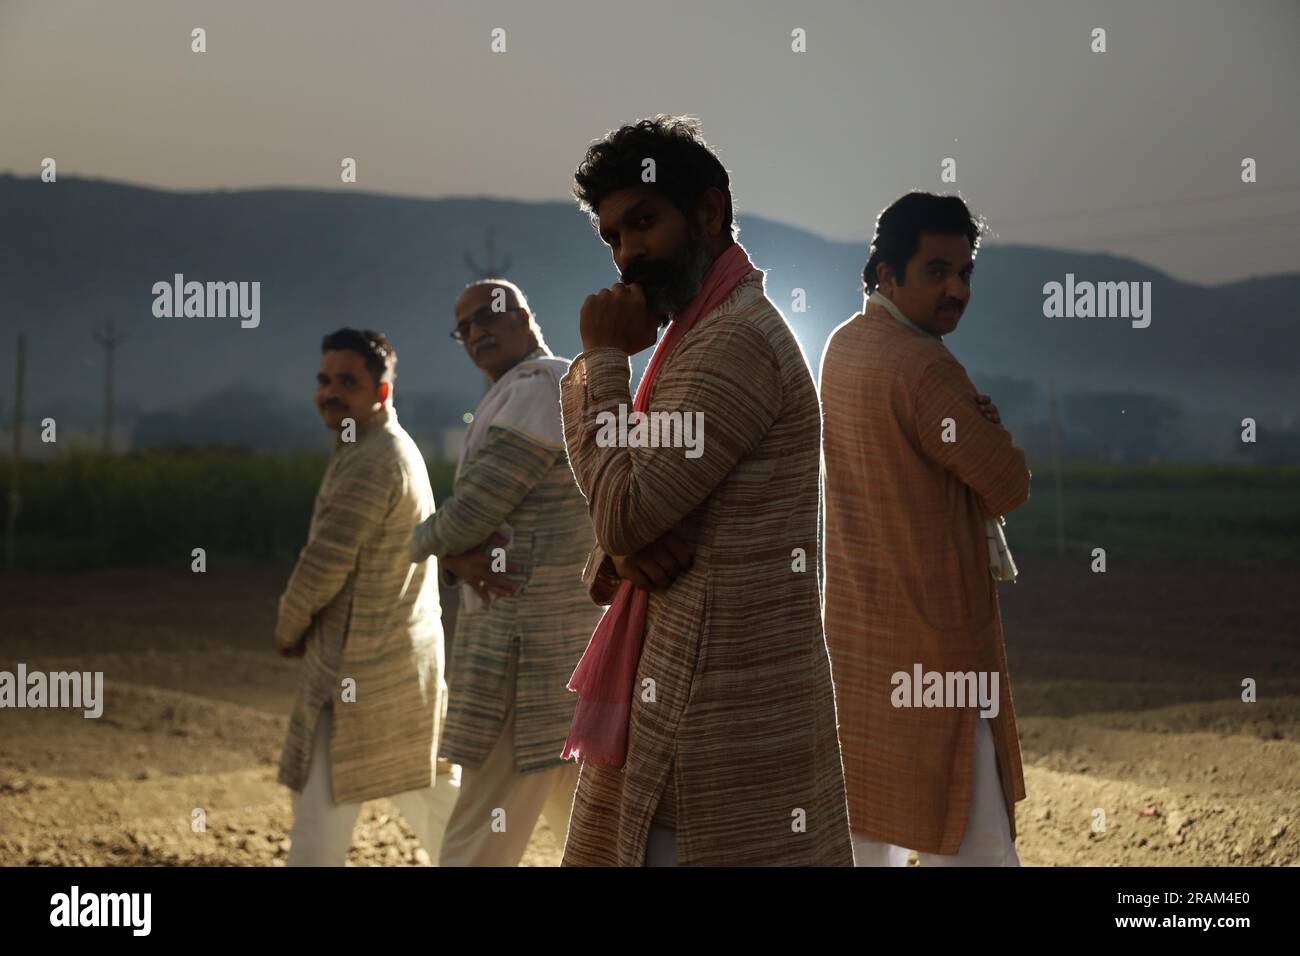 Wunderschöne Porträtkomposition indischer Bauern, die auf dem Feld stehen. Landwirtschaftskonzept zur Darstellung der Haltung der Landwirte. Stockfoto